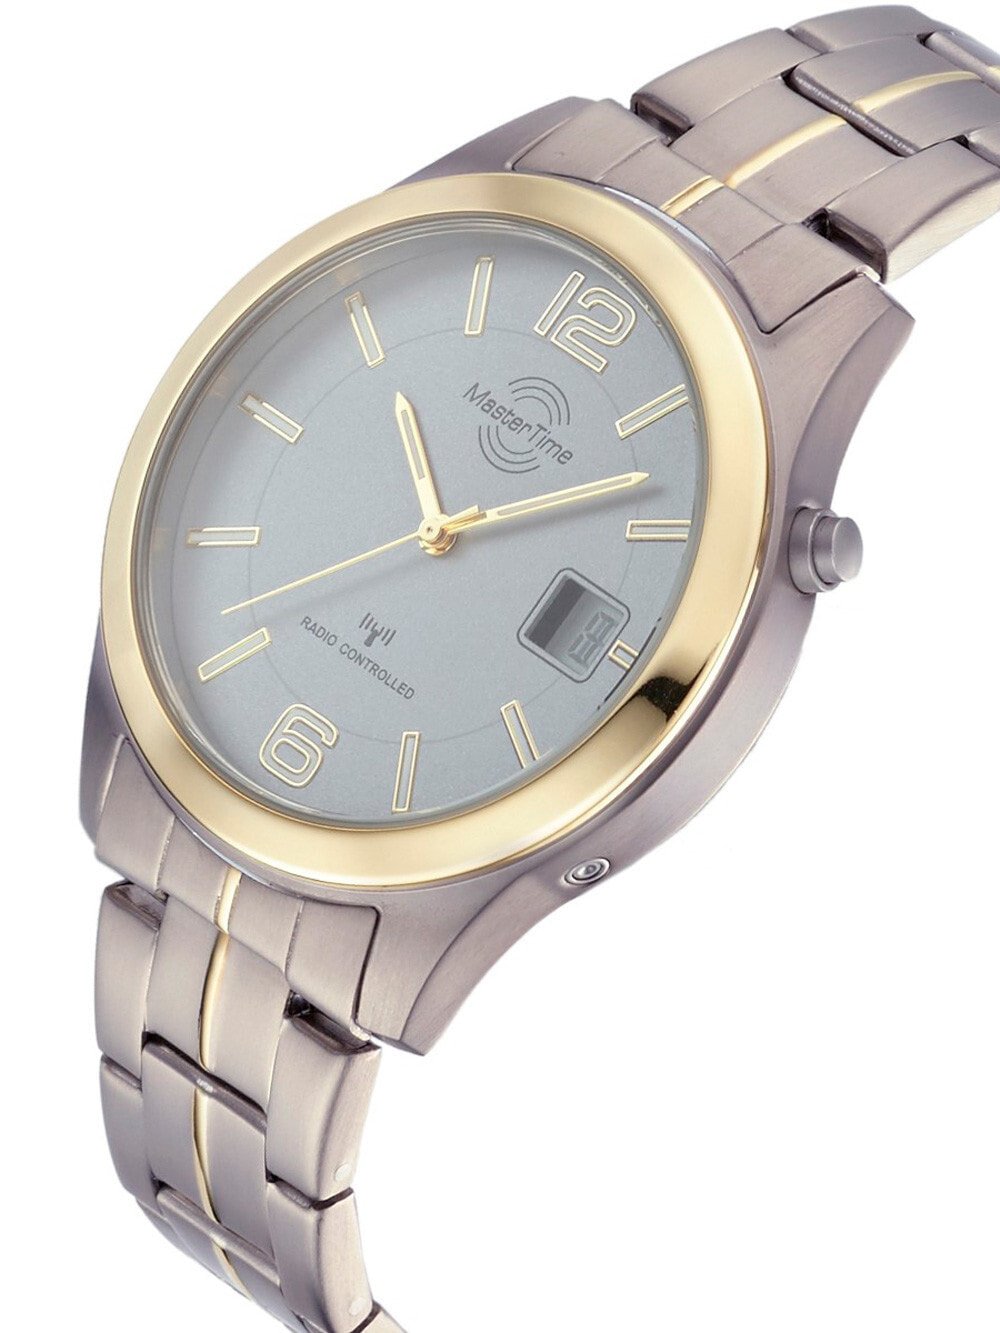 Мужские наручные часы с серебряным Radio купить Series 103473 доставкой, с — Titan недорого Mens Time 42mm браслетом Expert Controlled MTGT-10353-42M Master